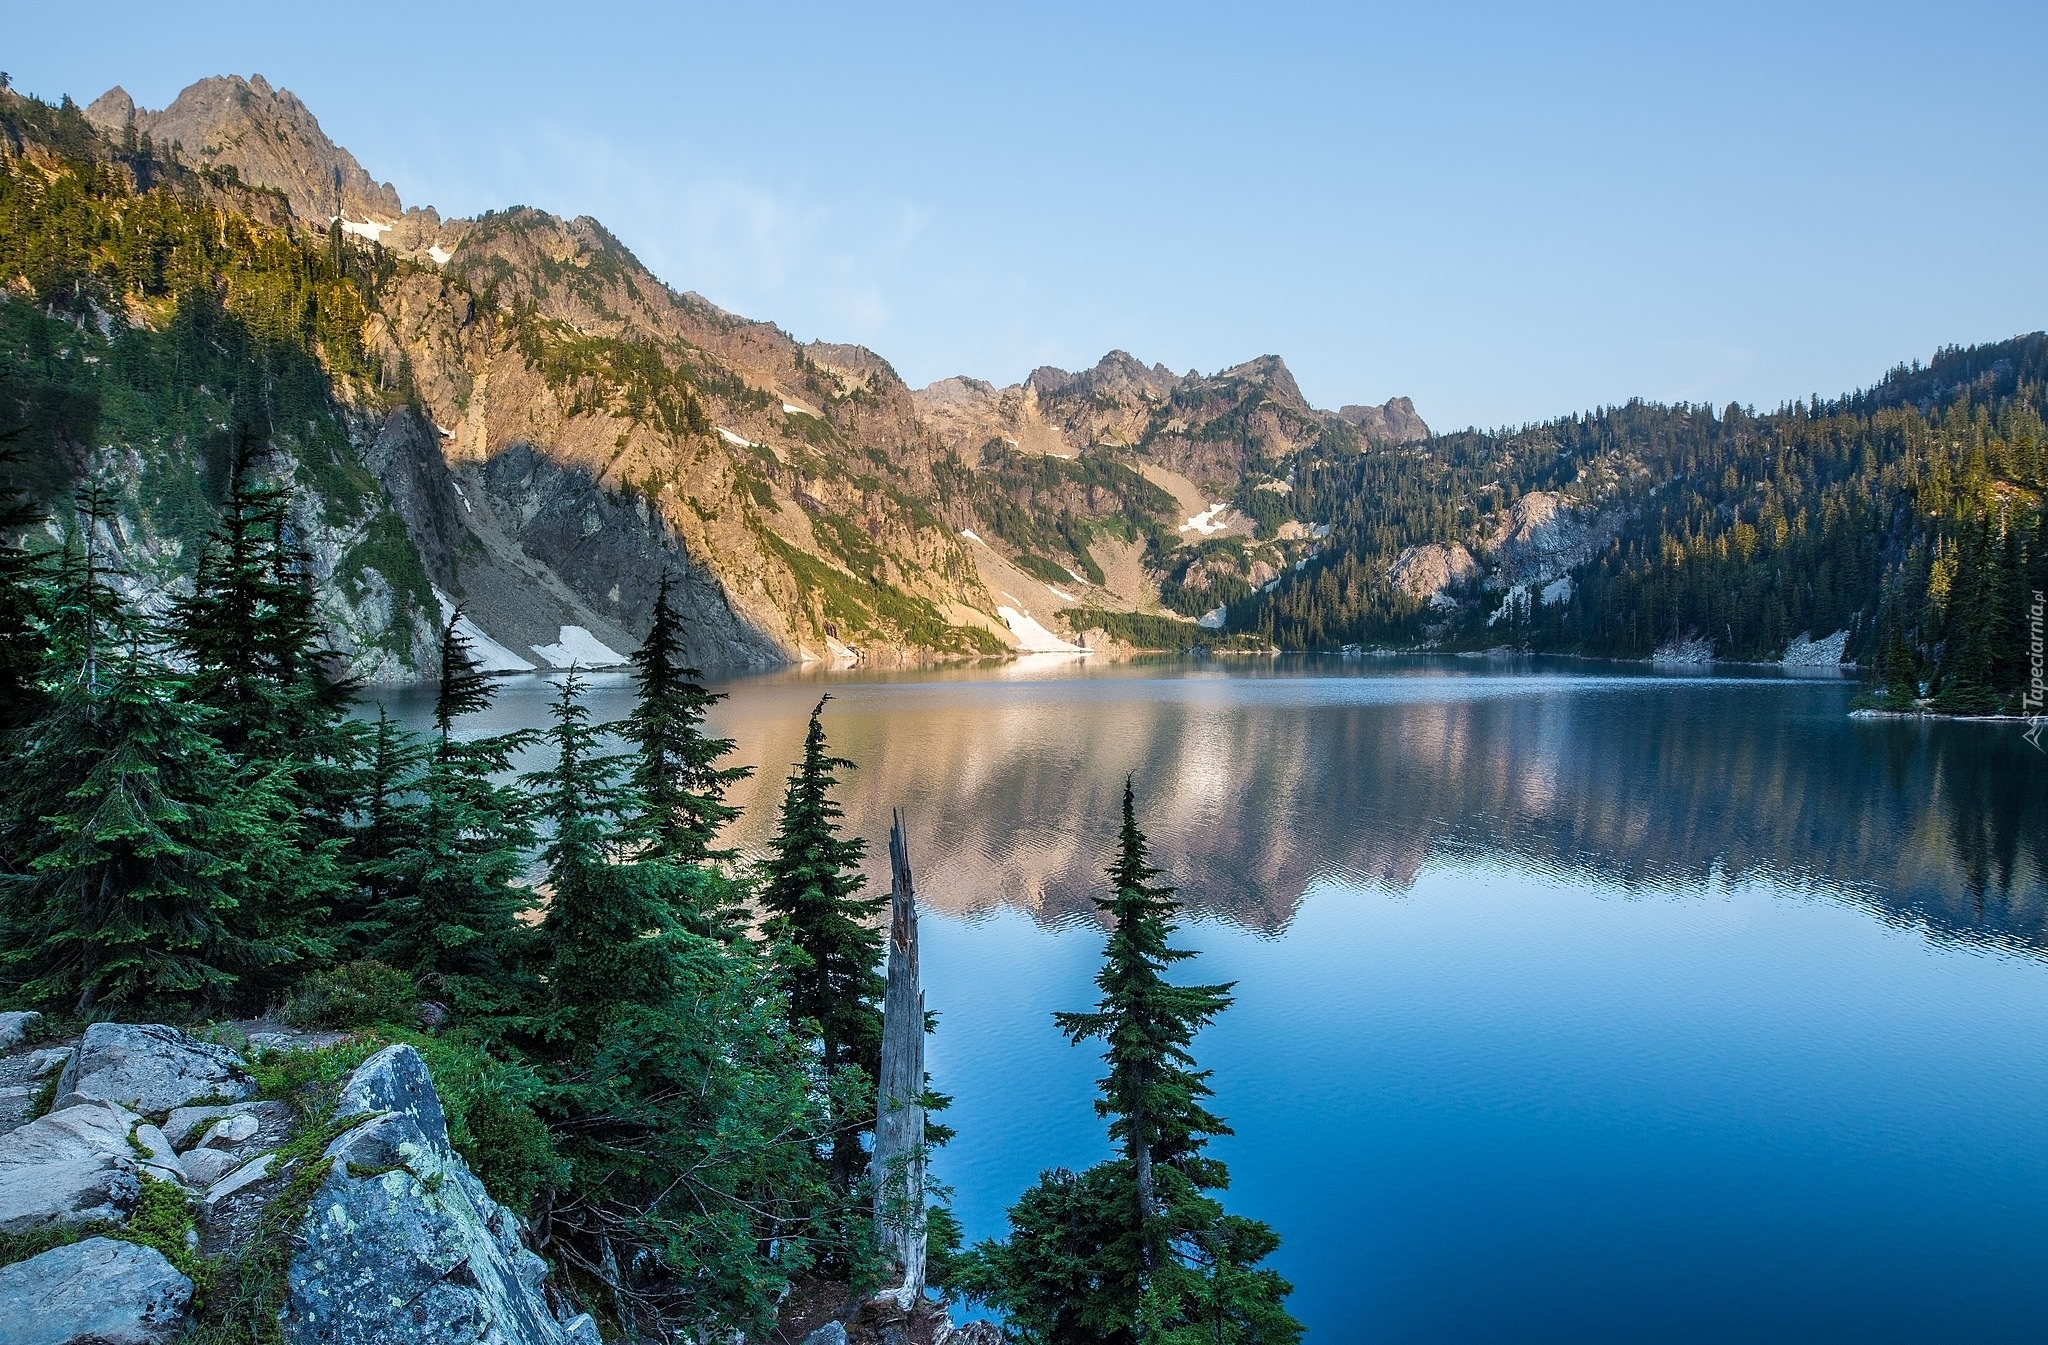 Jezioro Snow Lake, Góry Kaskadowe, Przełęcz Snoqualmie Pass, Świerki, Kamienie, Hrabstwo King, Stan Waszyngton, Stany Zjednoczone